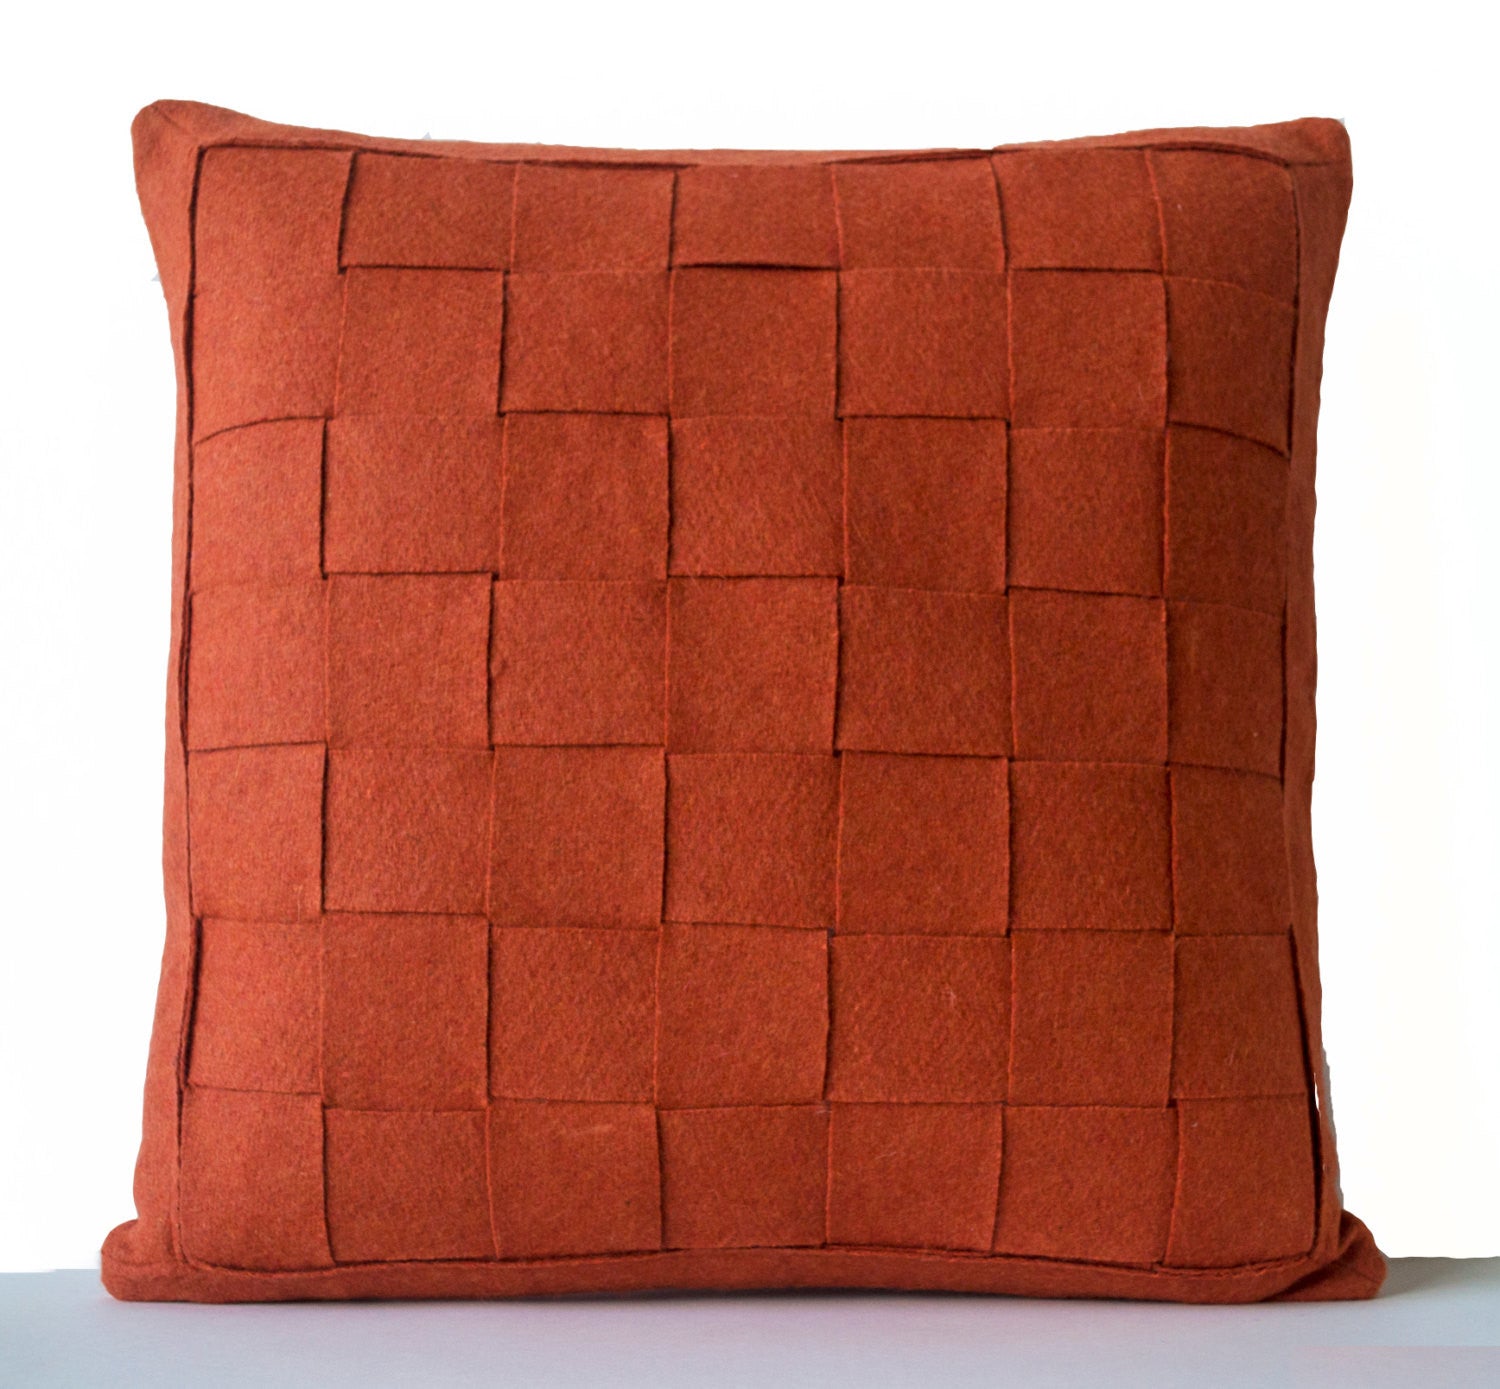 Handmade orange felt weave pillows